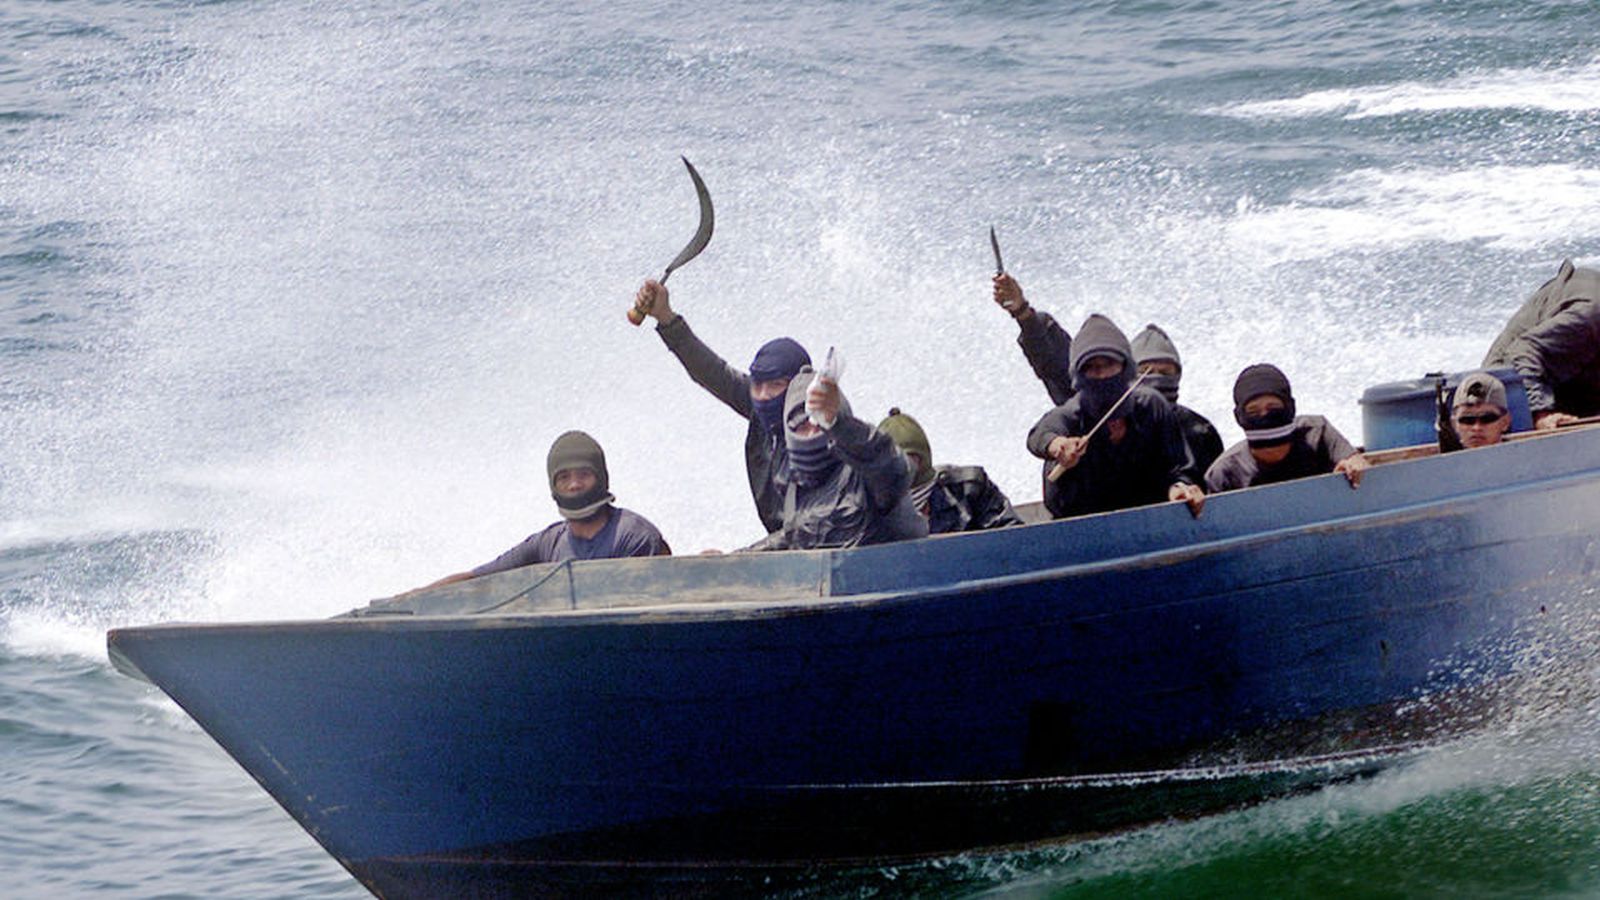 Нападение на судно. Пираты 21 века Сомали. Малаккский пролив пираты. Корабль сомалийских пиратов.